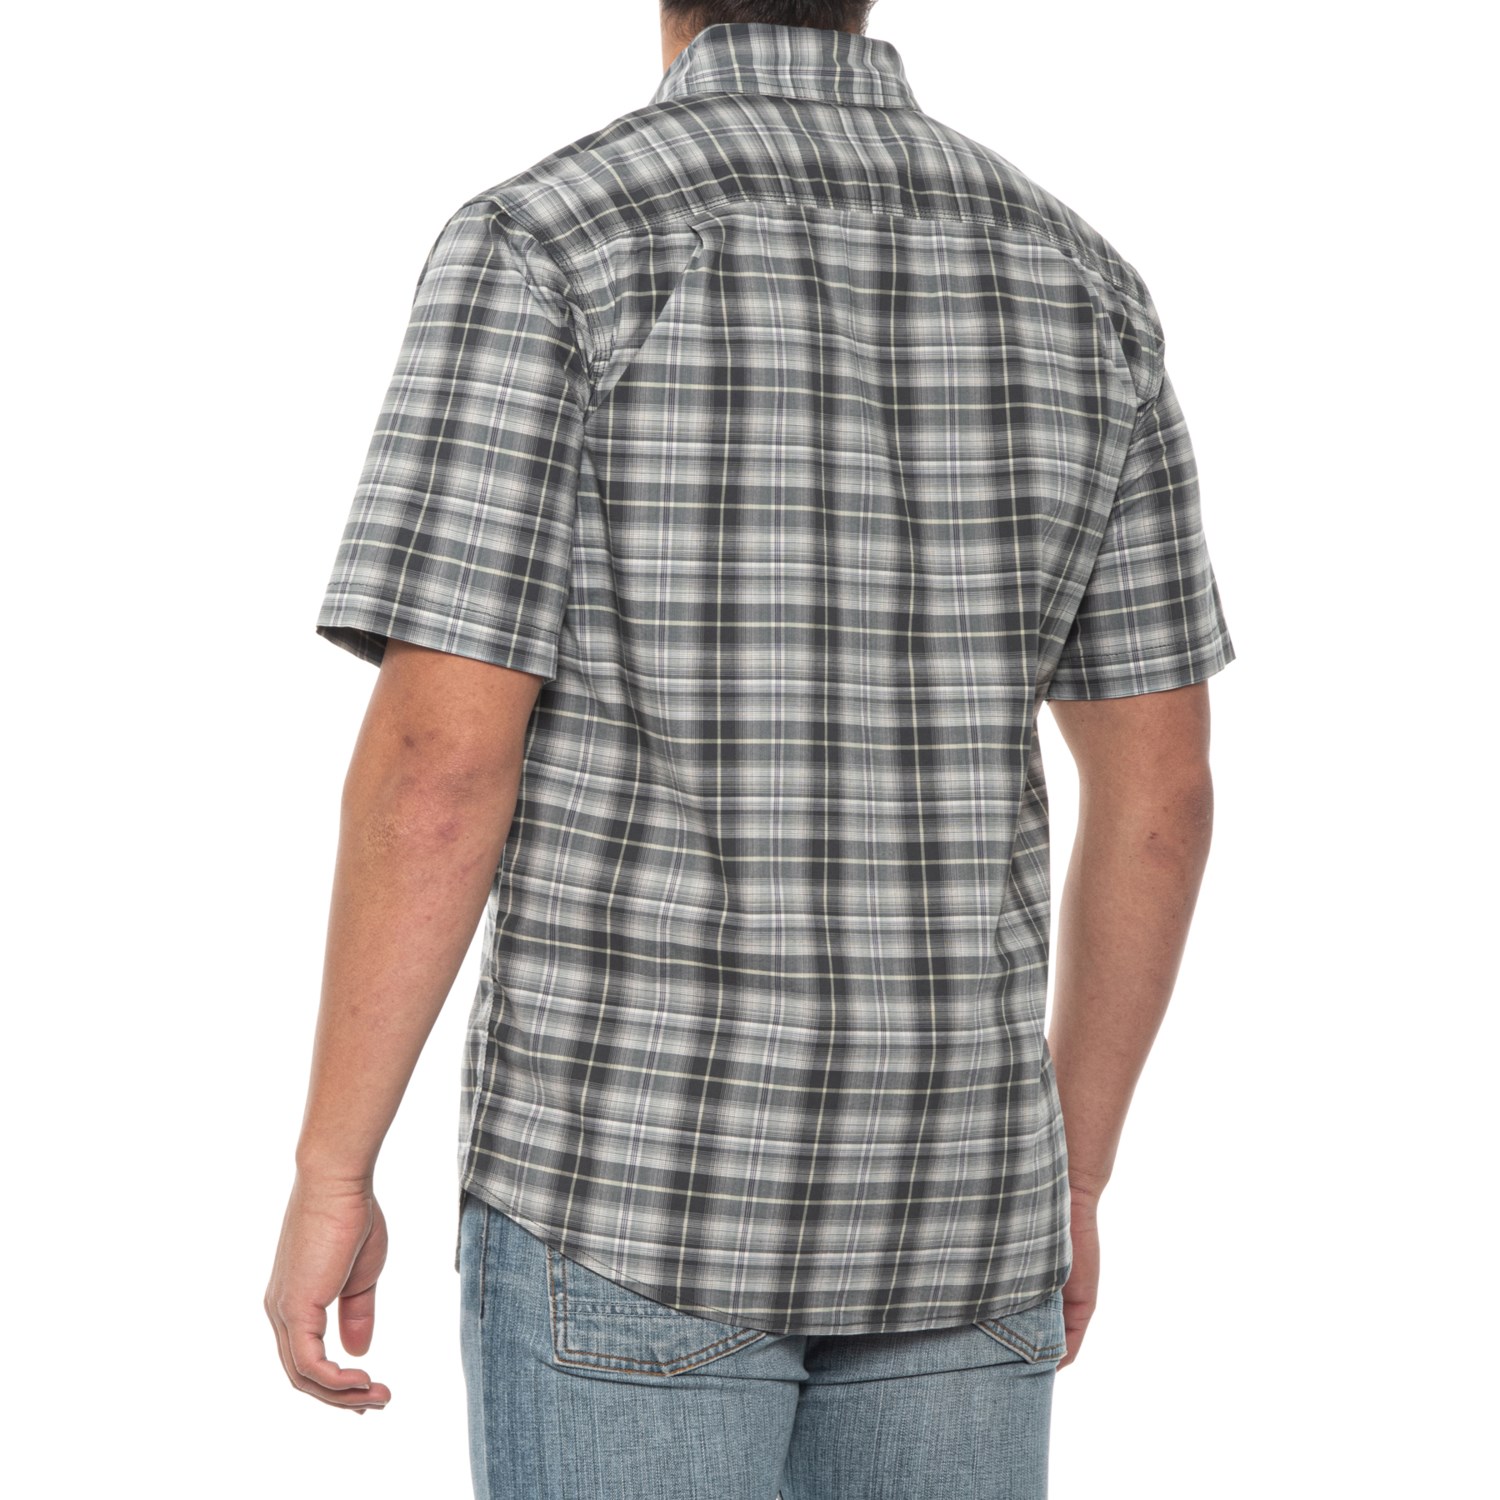 Carhartt Men's Rugged Flex Relaxed Fit Lightweight Short-Sleeve Shirt